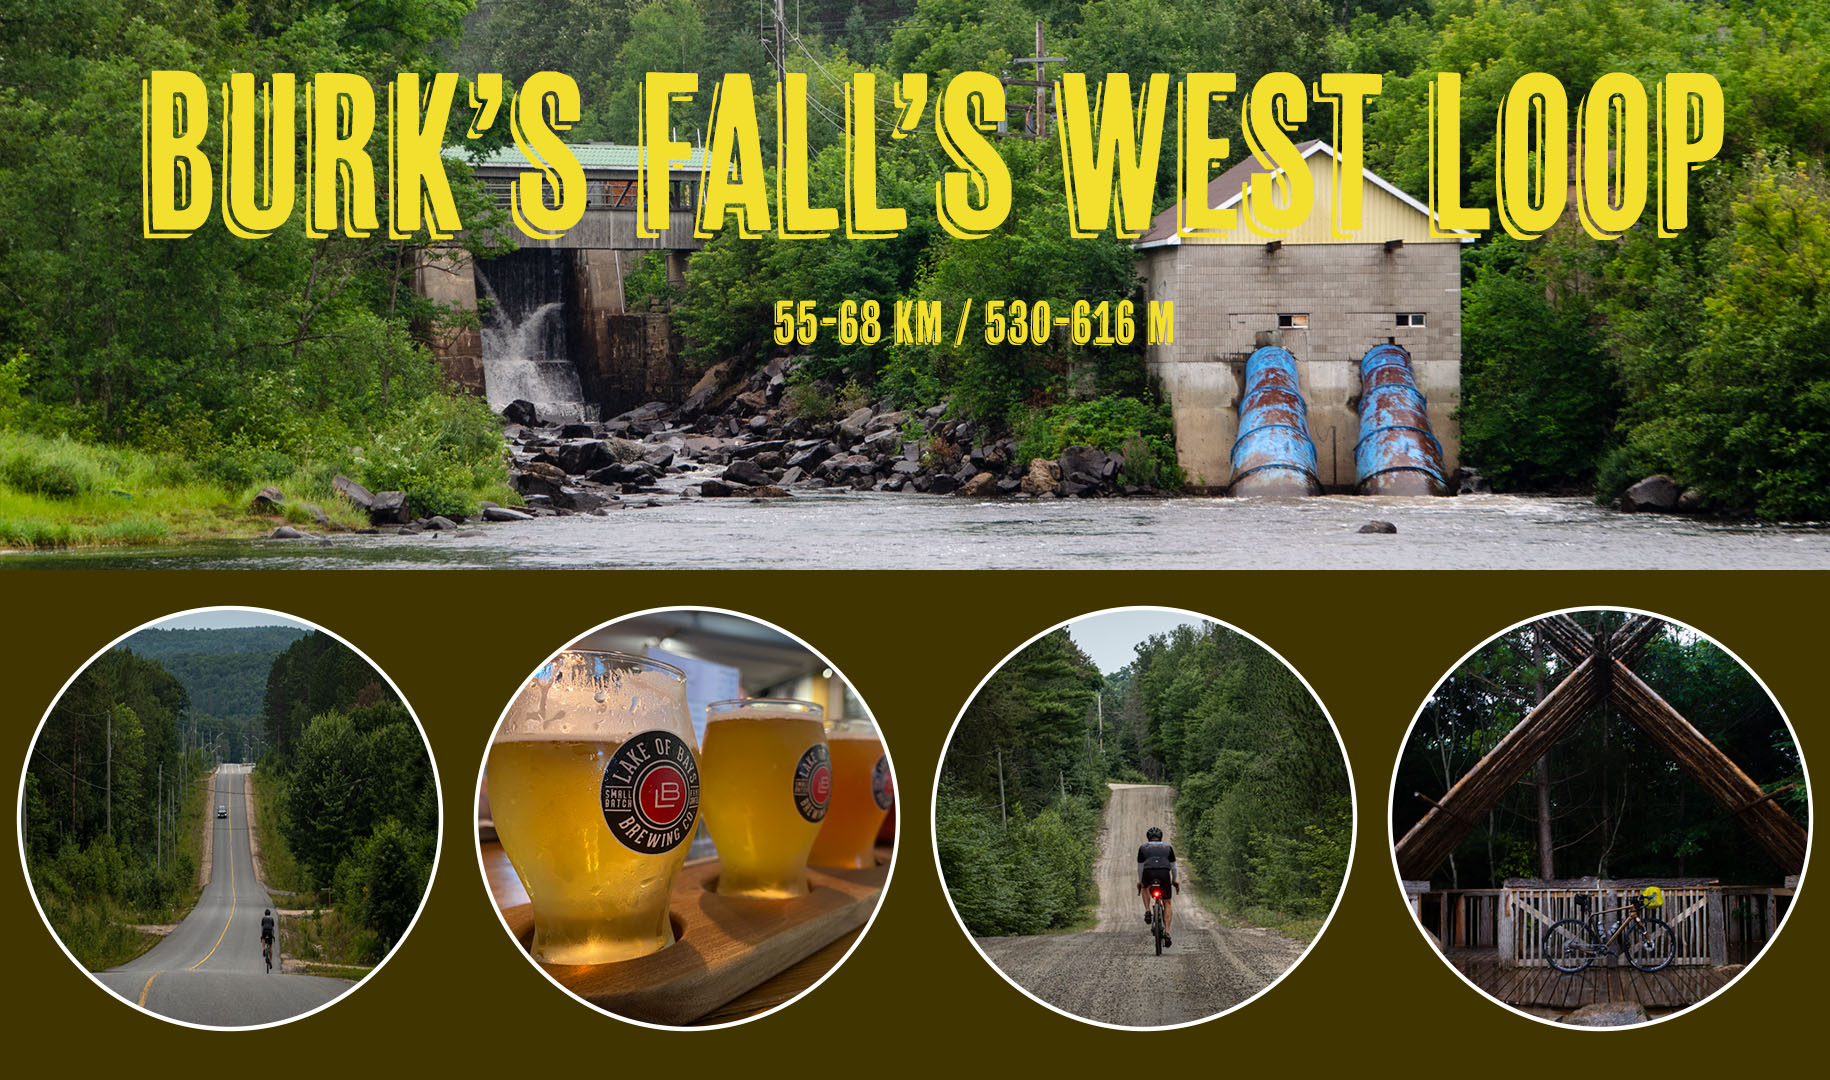 Burks Falls West Loop Cover Photo